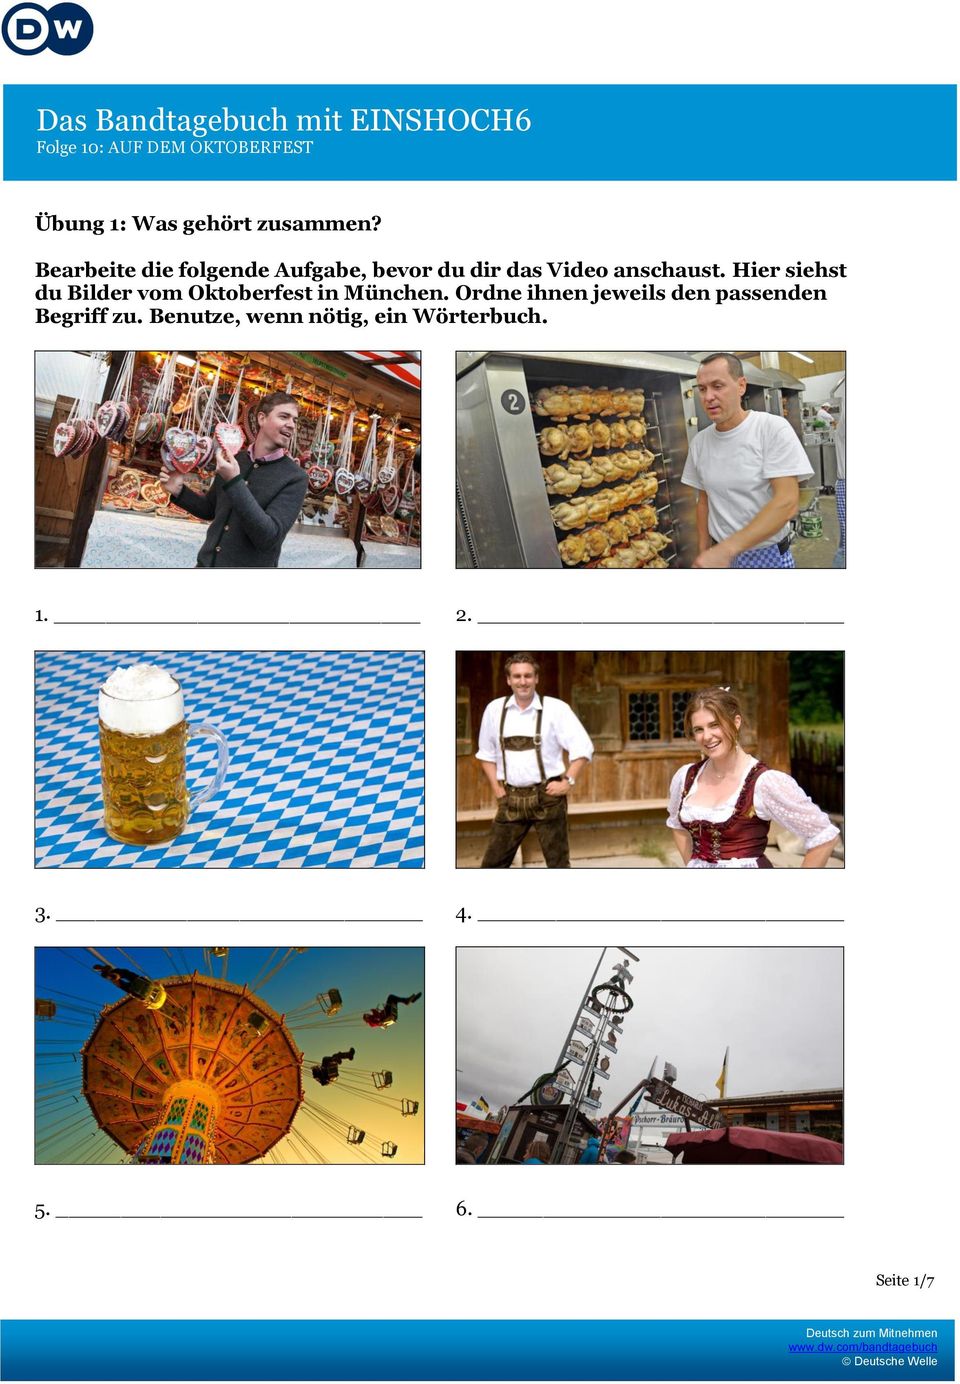 anschaust. Hier siehst du Bilder vom Oktoberfest in München.